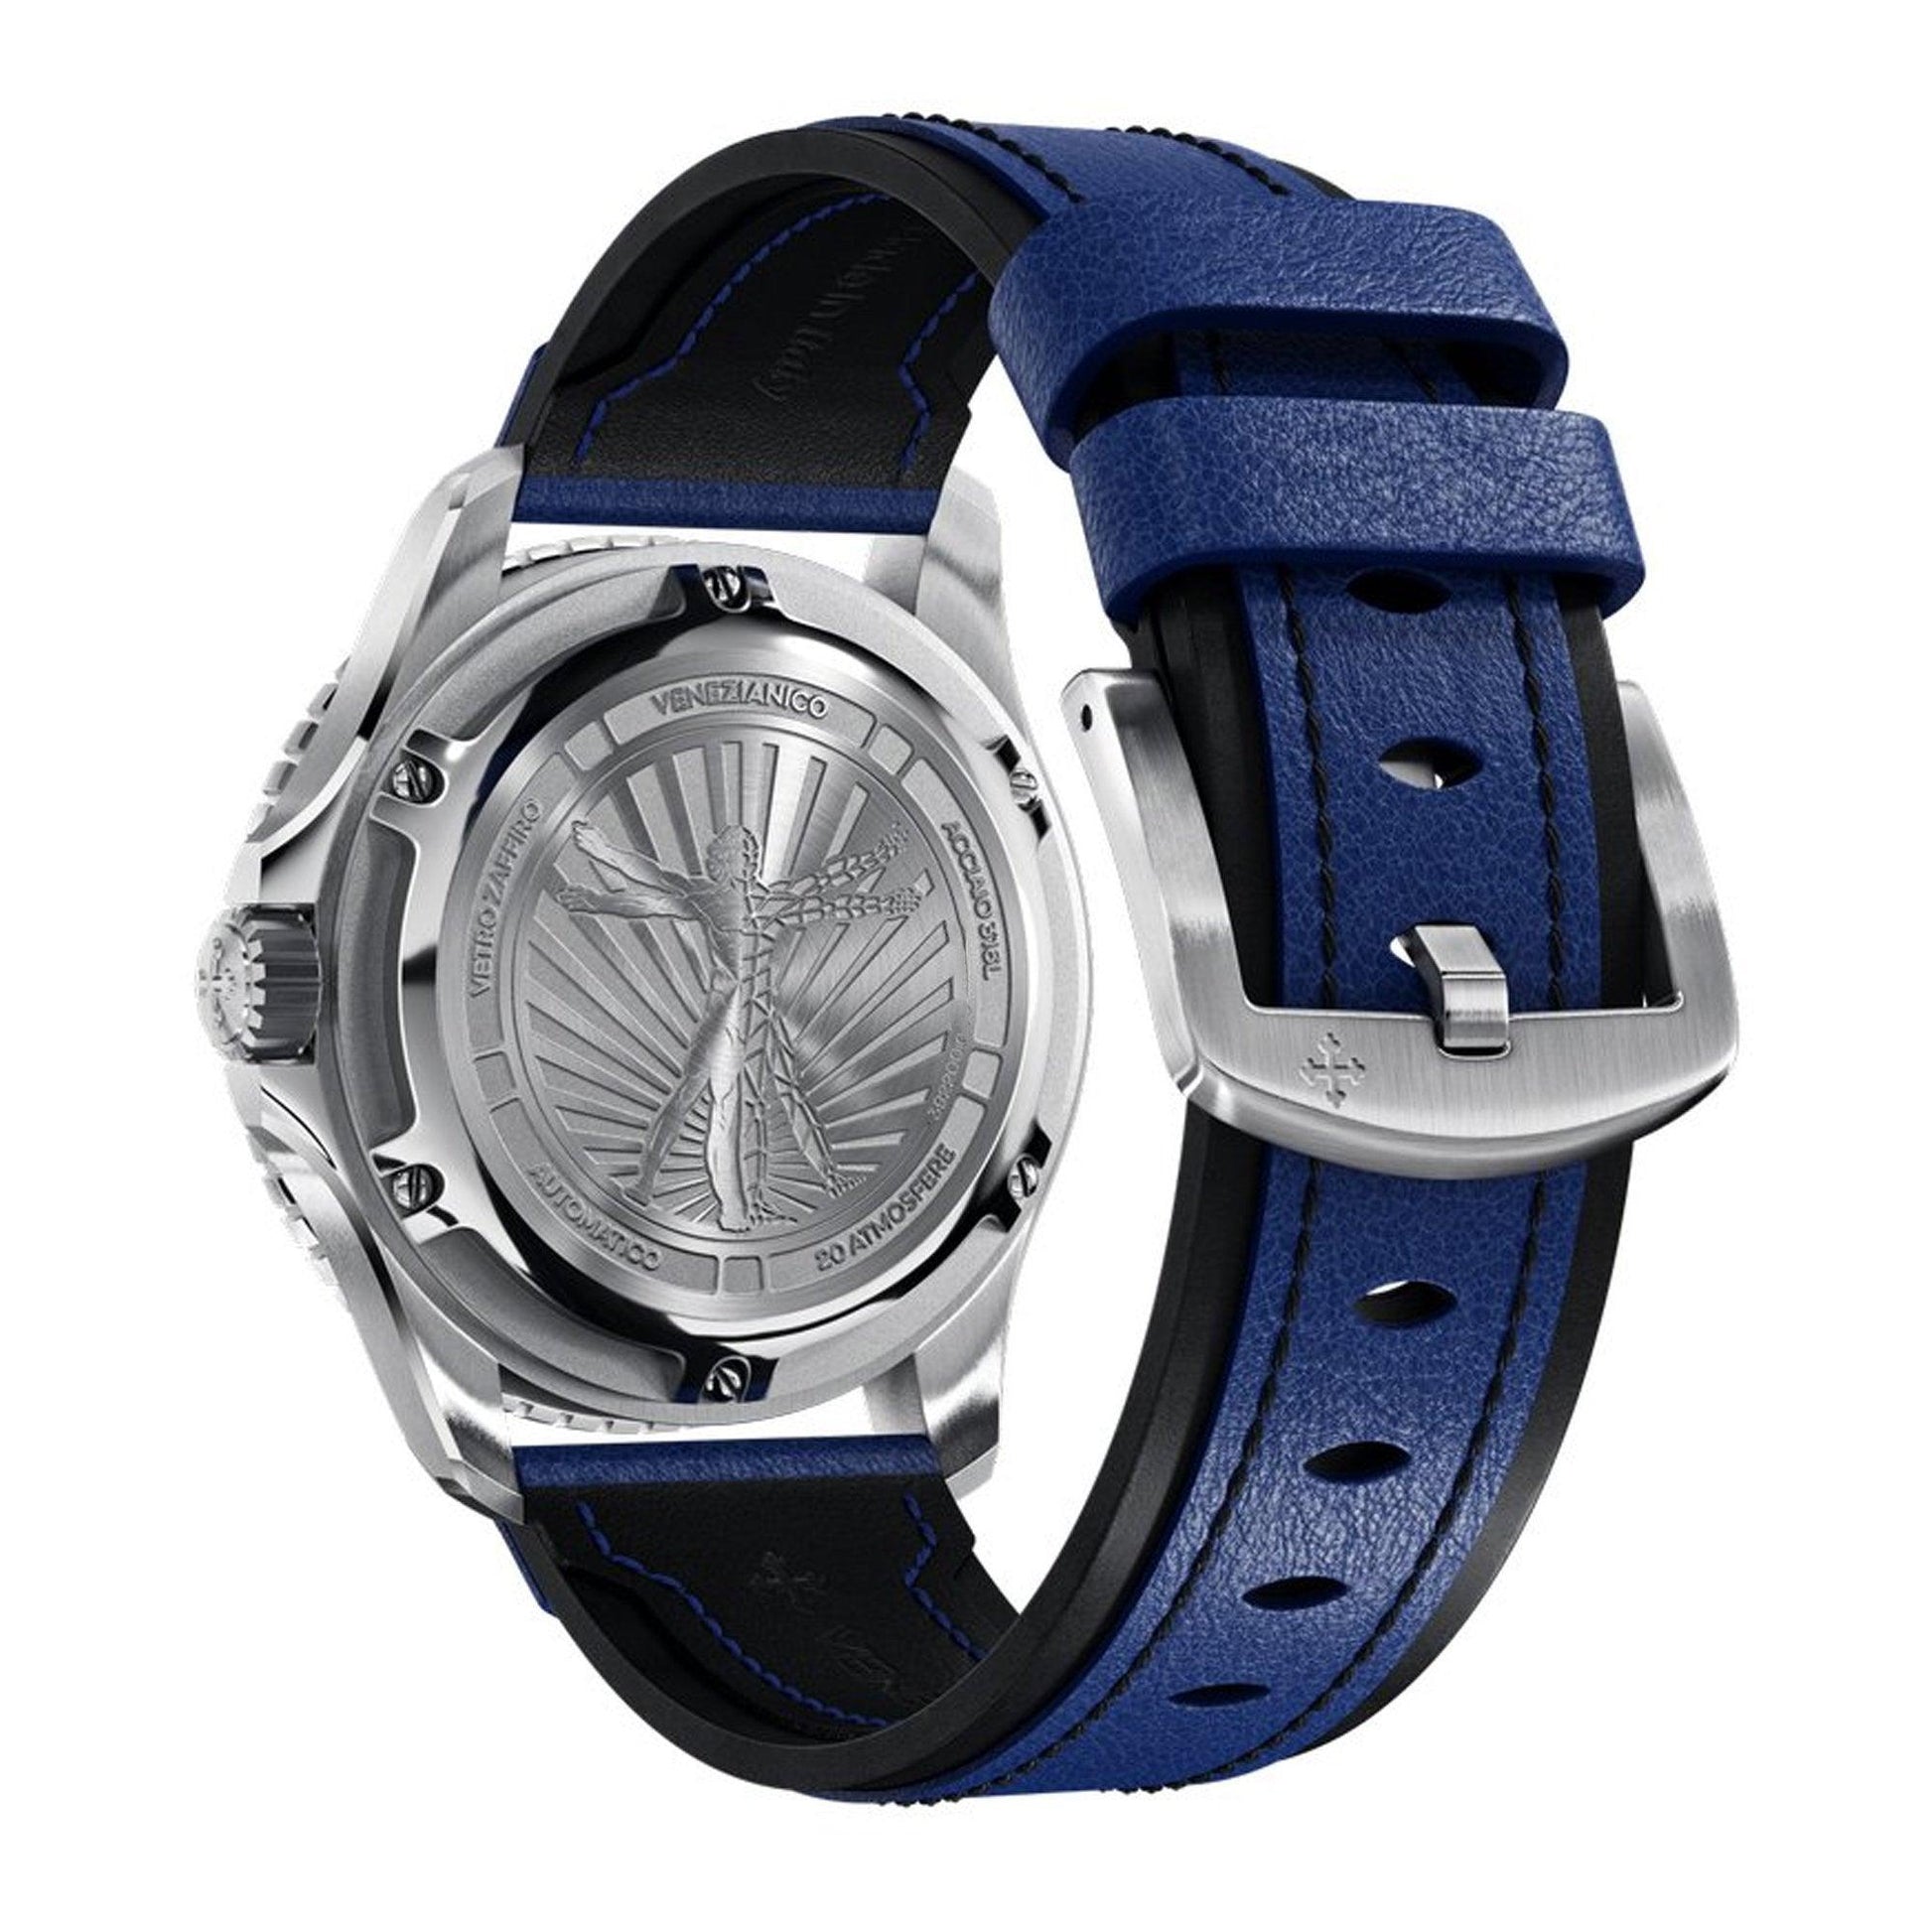 Venezianico Nereide Ultraleggero 3921502 orologio uomo meccanico - Kechiq Concept Boutique